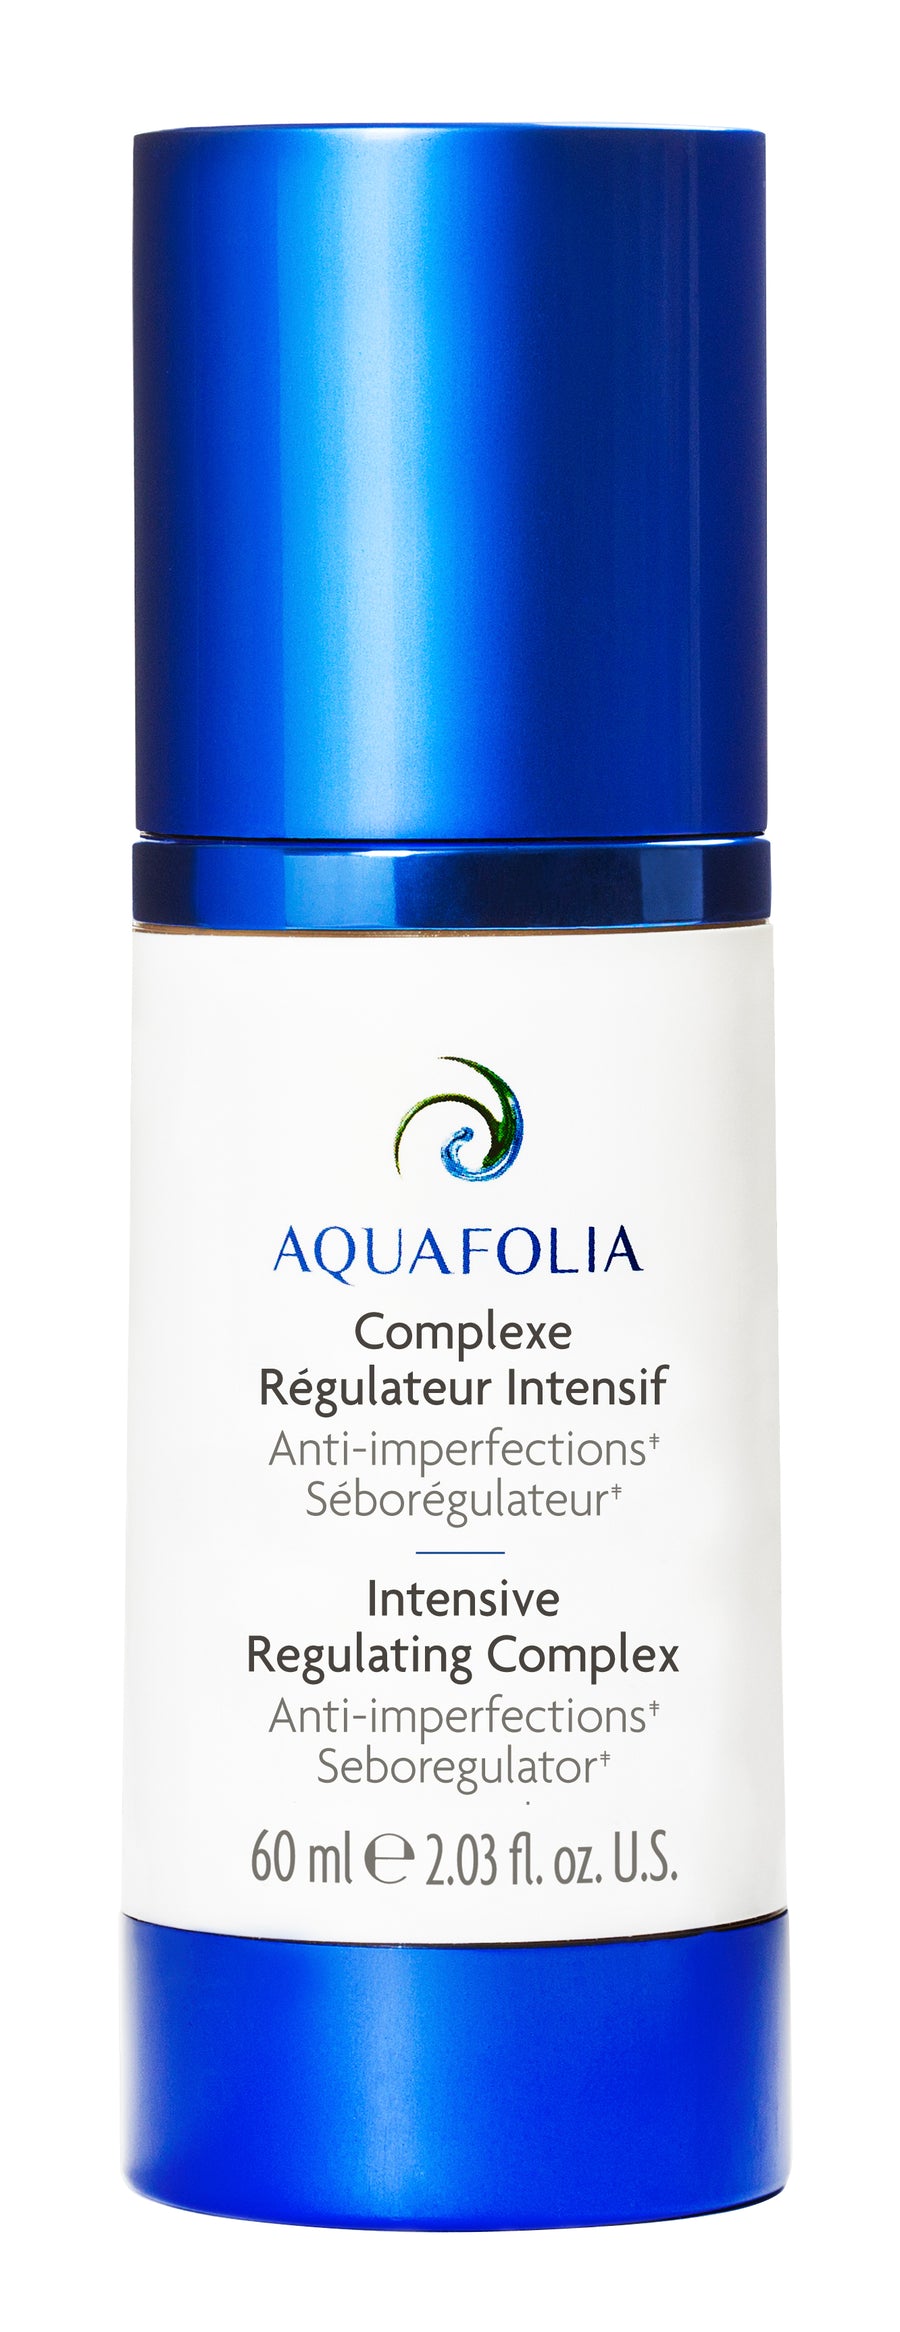 Aquafolia- Complexe Régulateur Intensif- Concept Triple Action 3A